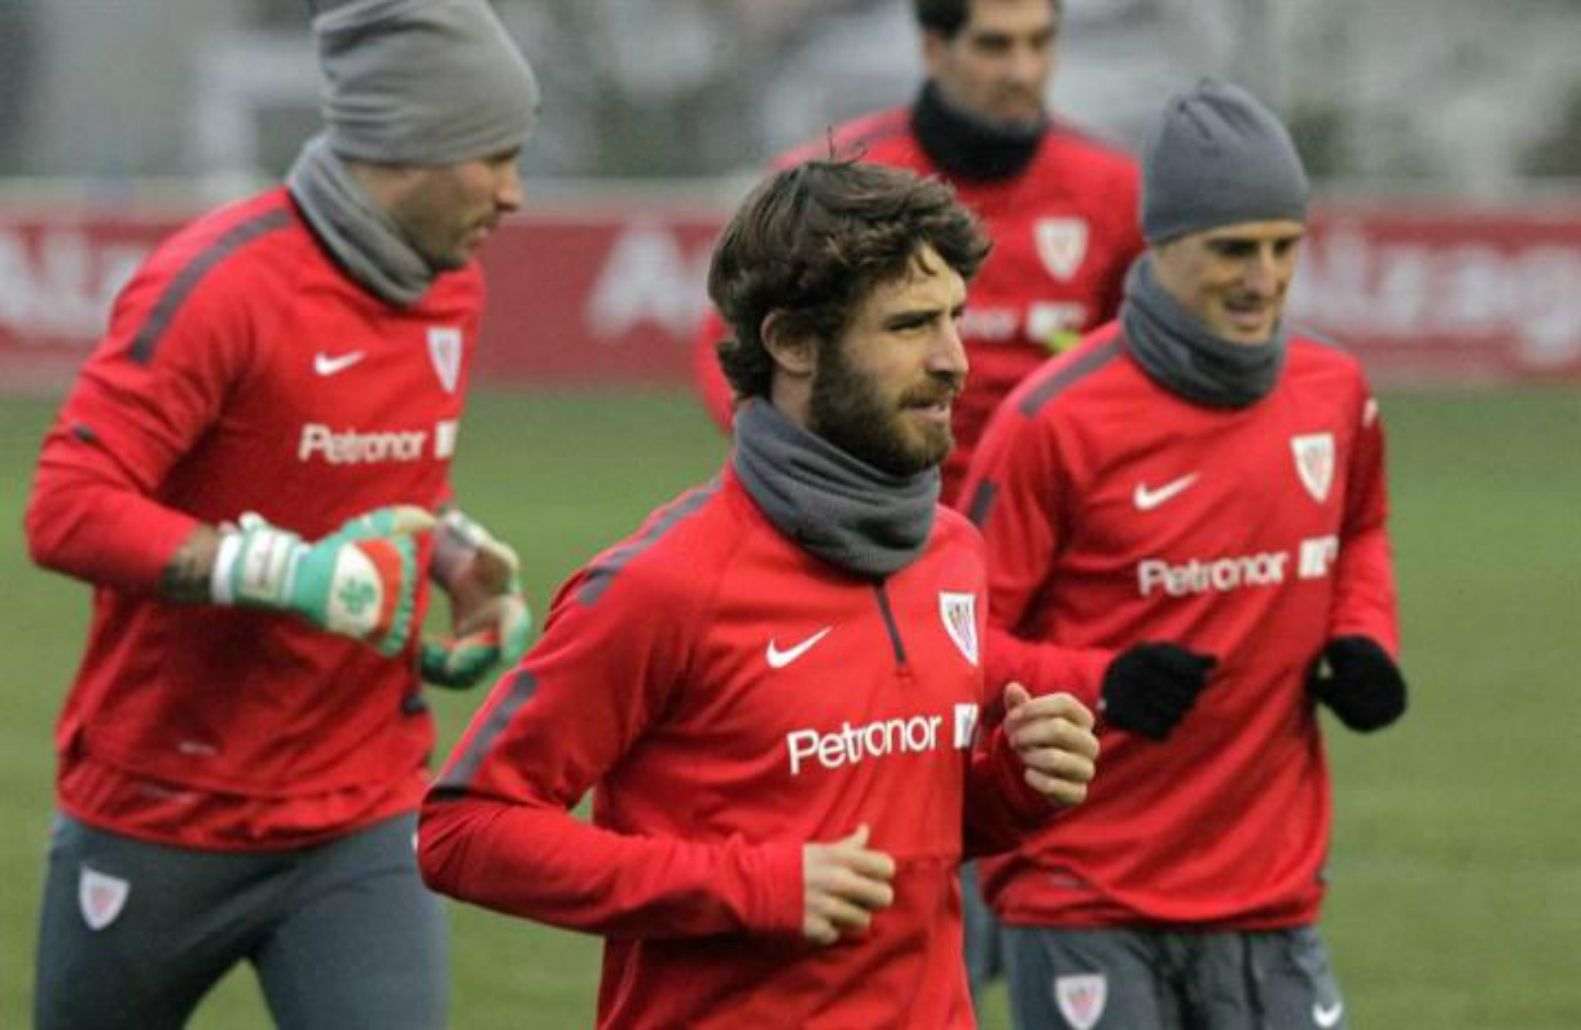 El jugador de l'Athletic Yeray Álvarez recau d'un tumor i rebrà quimioteràpia